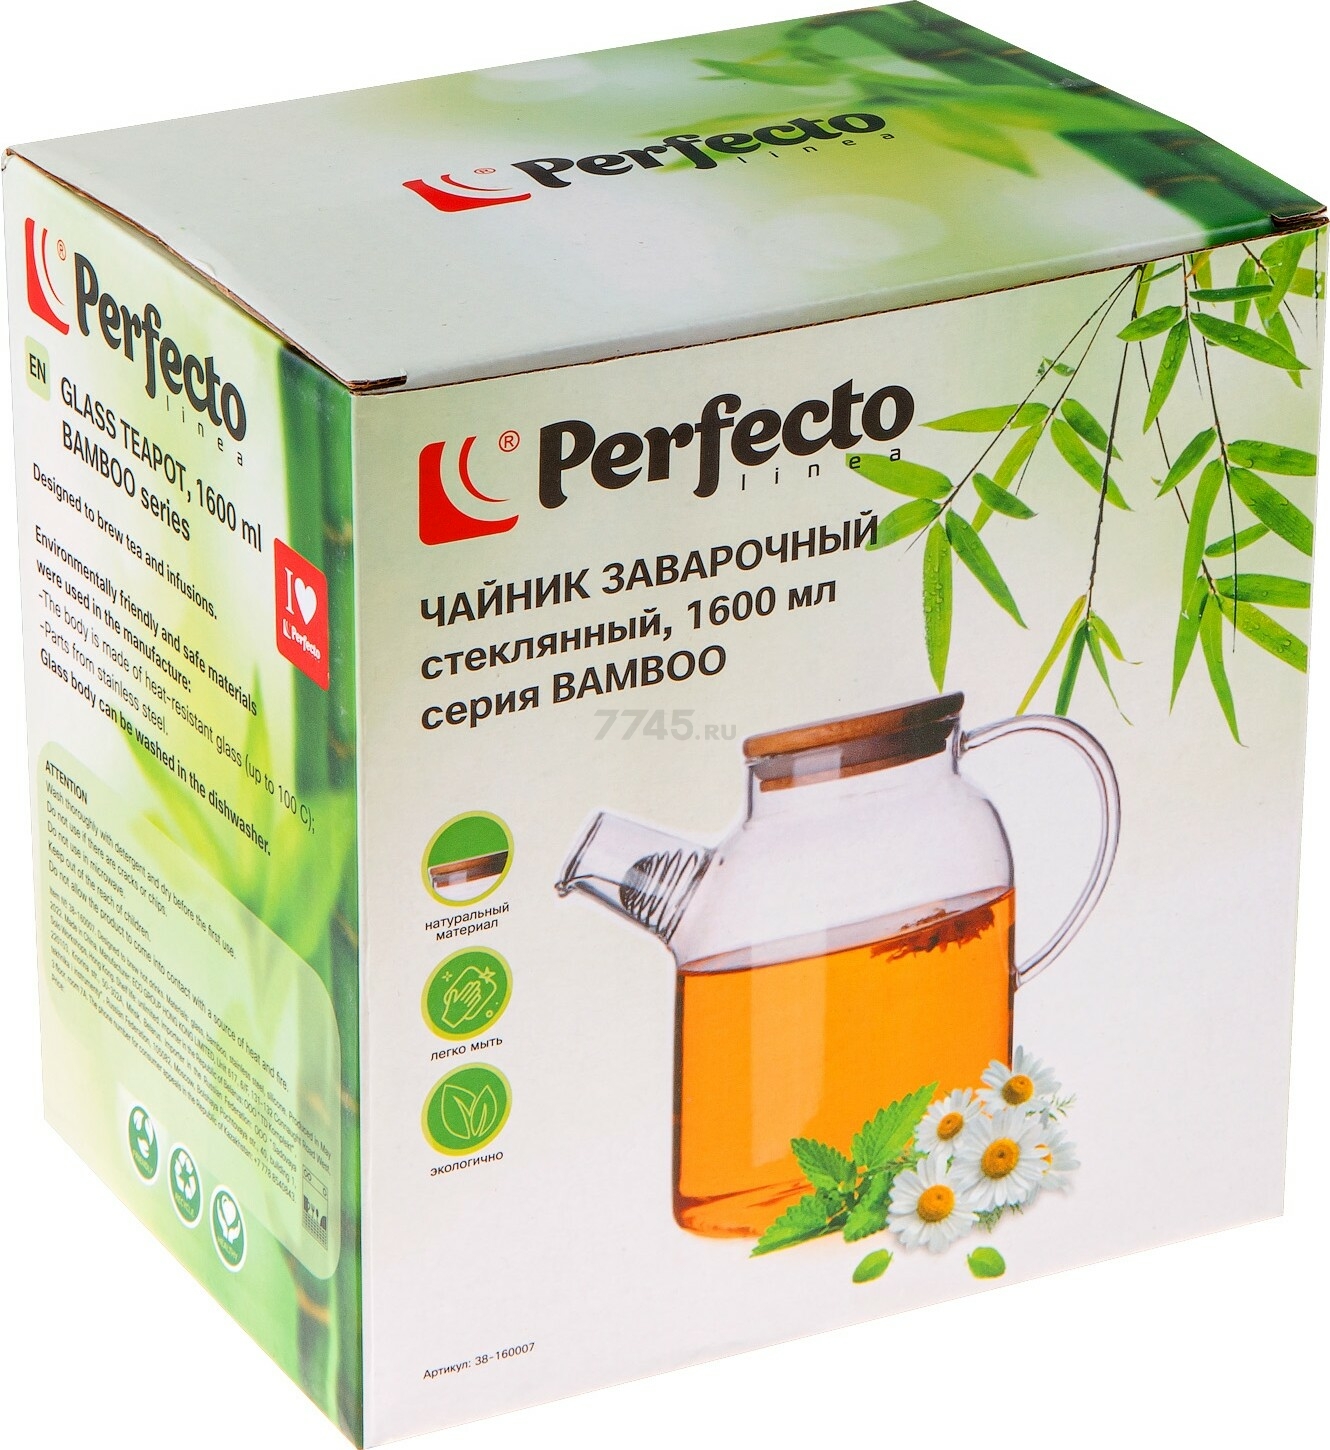 Заварочный чайник стеклянный PERFECTO LINEA Bamboo 1,6 л (38-160007) - Фото 4